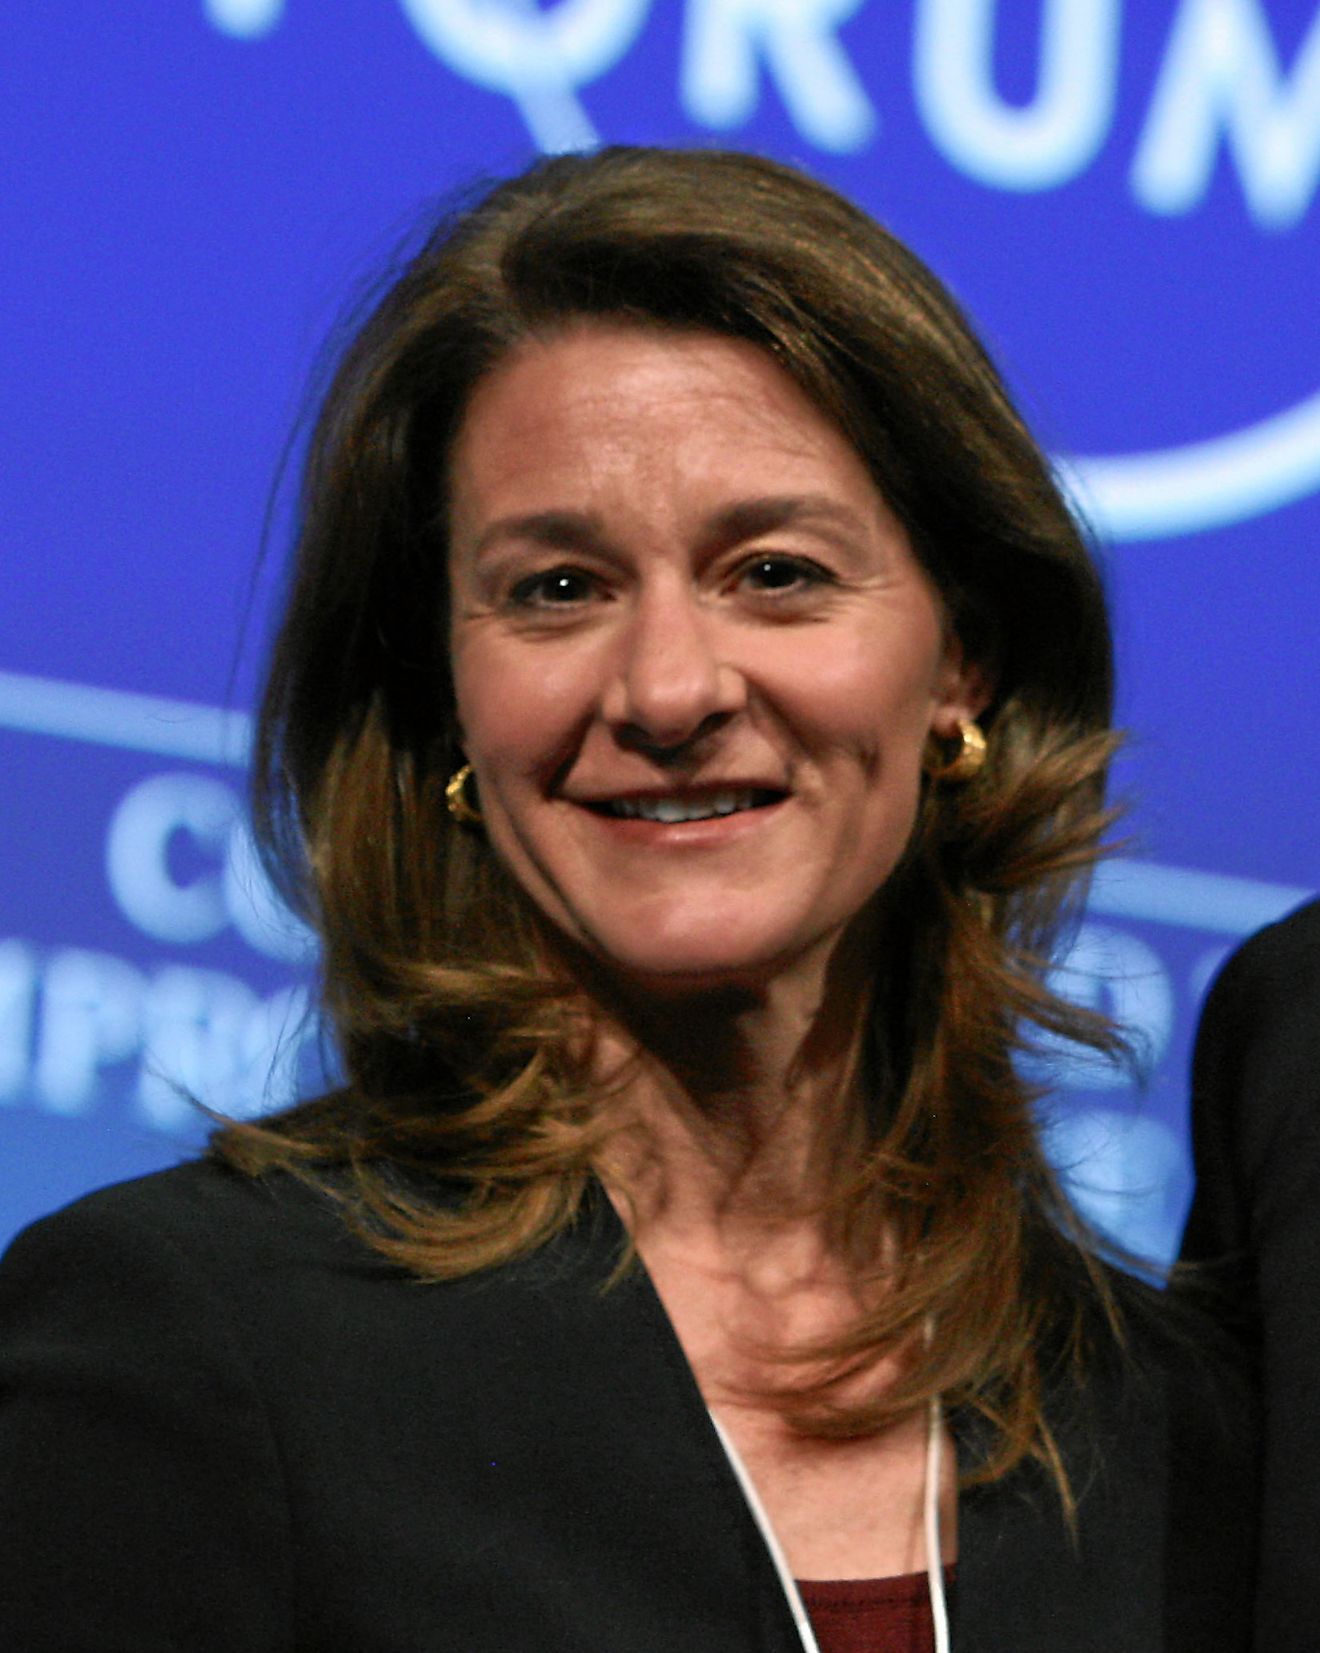 Melinda Gates. Image credit World Economic Forum/Wikimedia.org